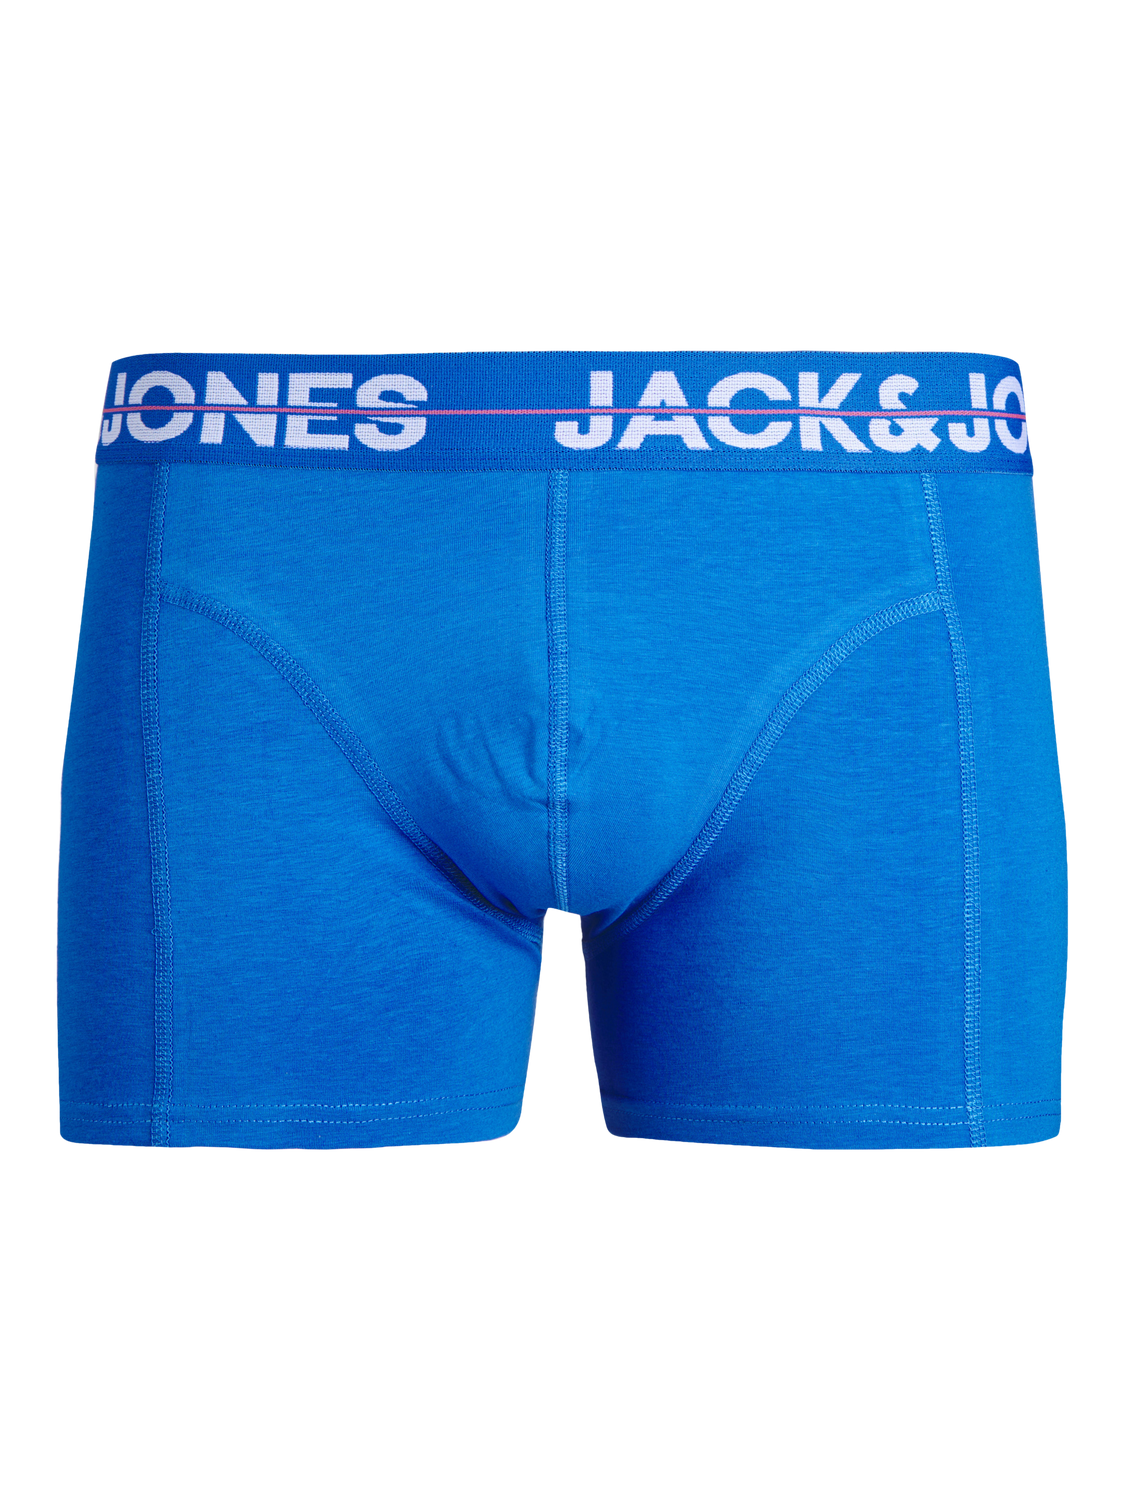 Jack & Jones Plus Size 3-pakuotės Trumpikės -Victoria Blue - 12257402